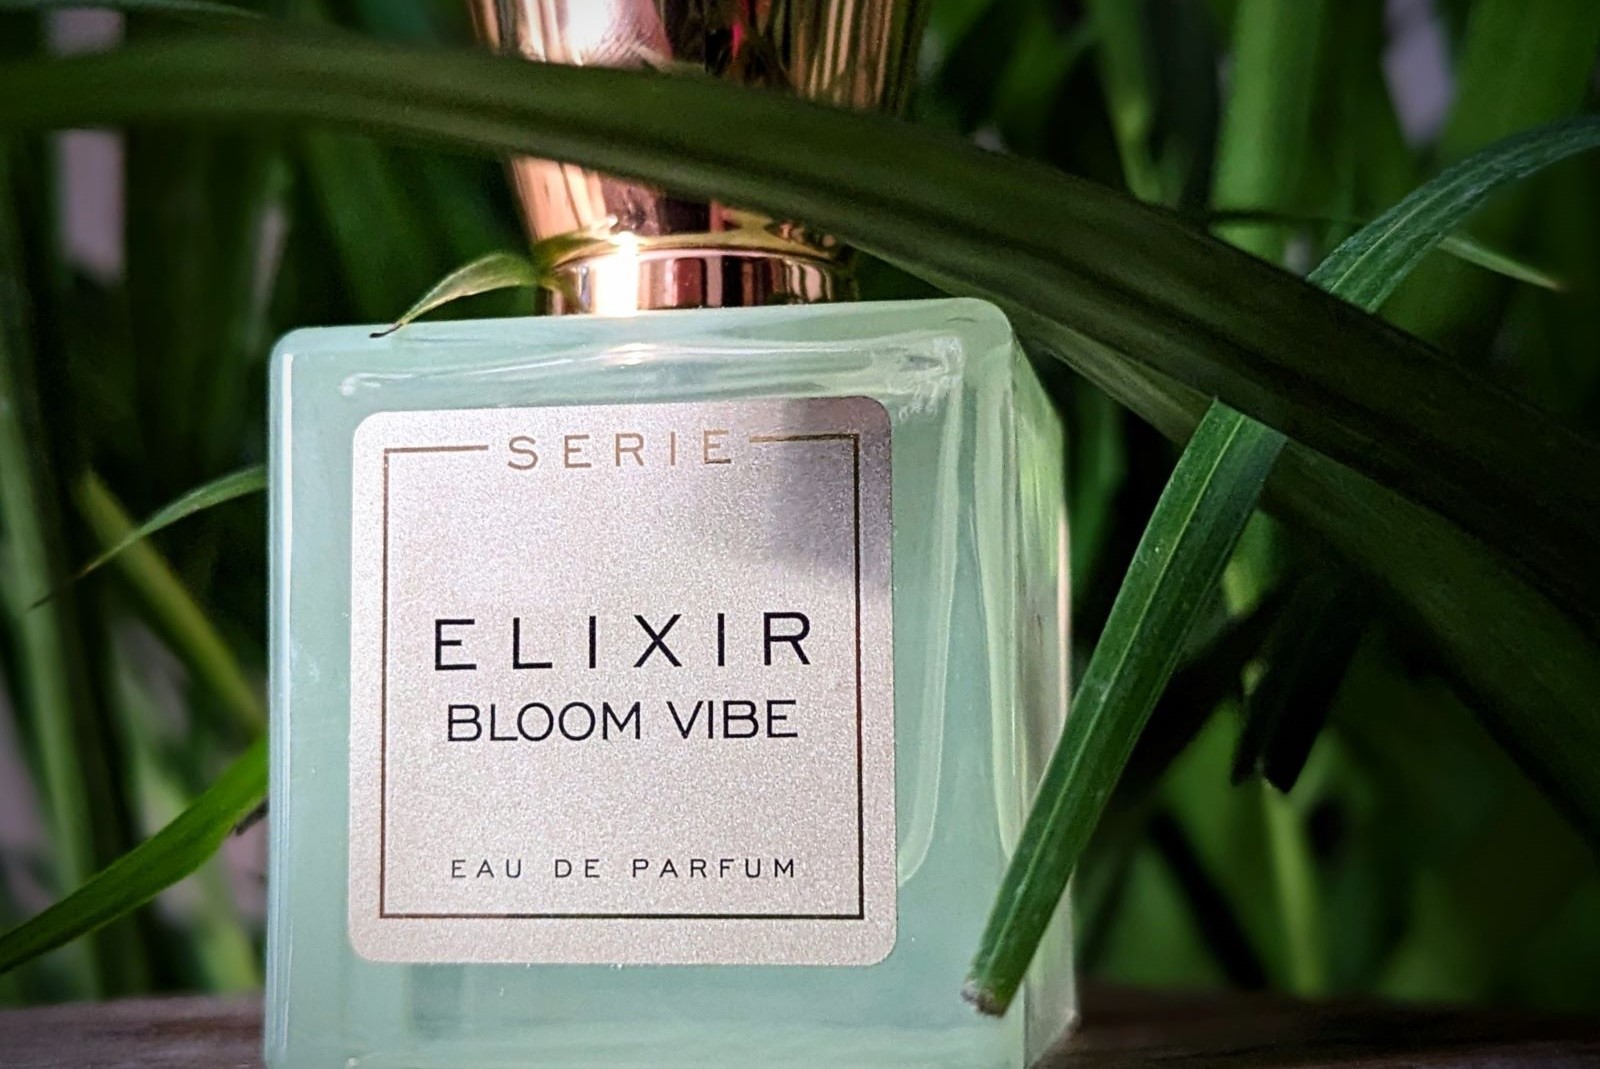 Serie Beauty Elixir Bloom Vibe